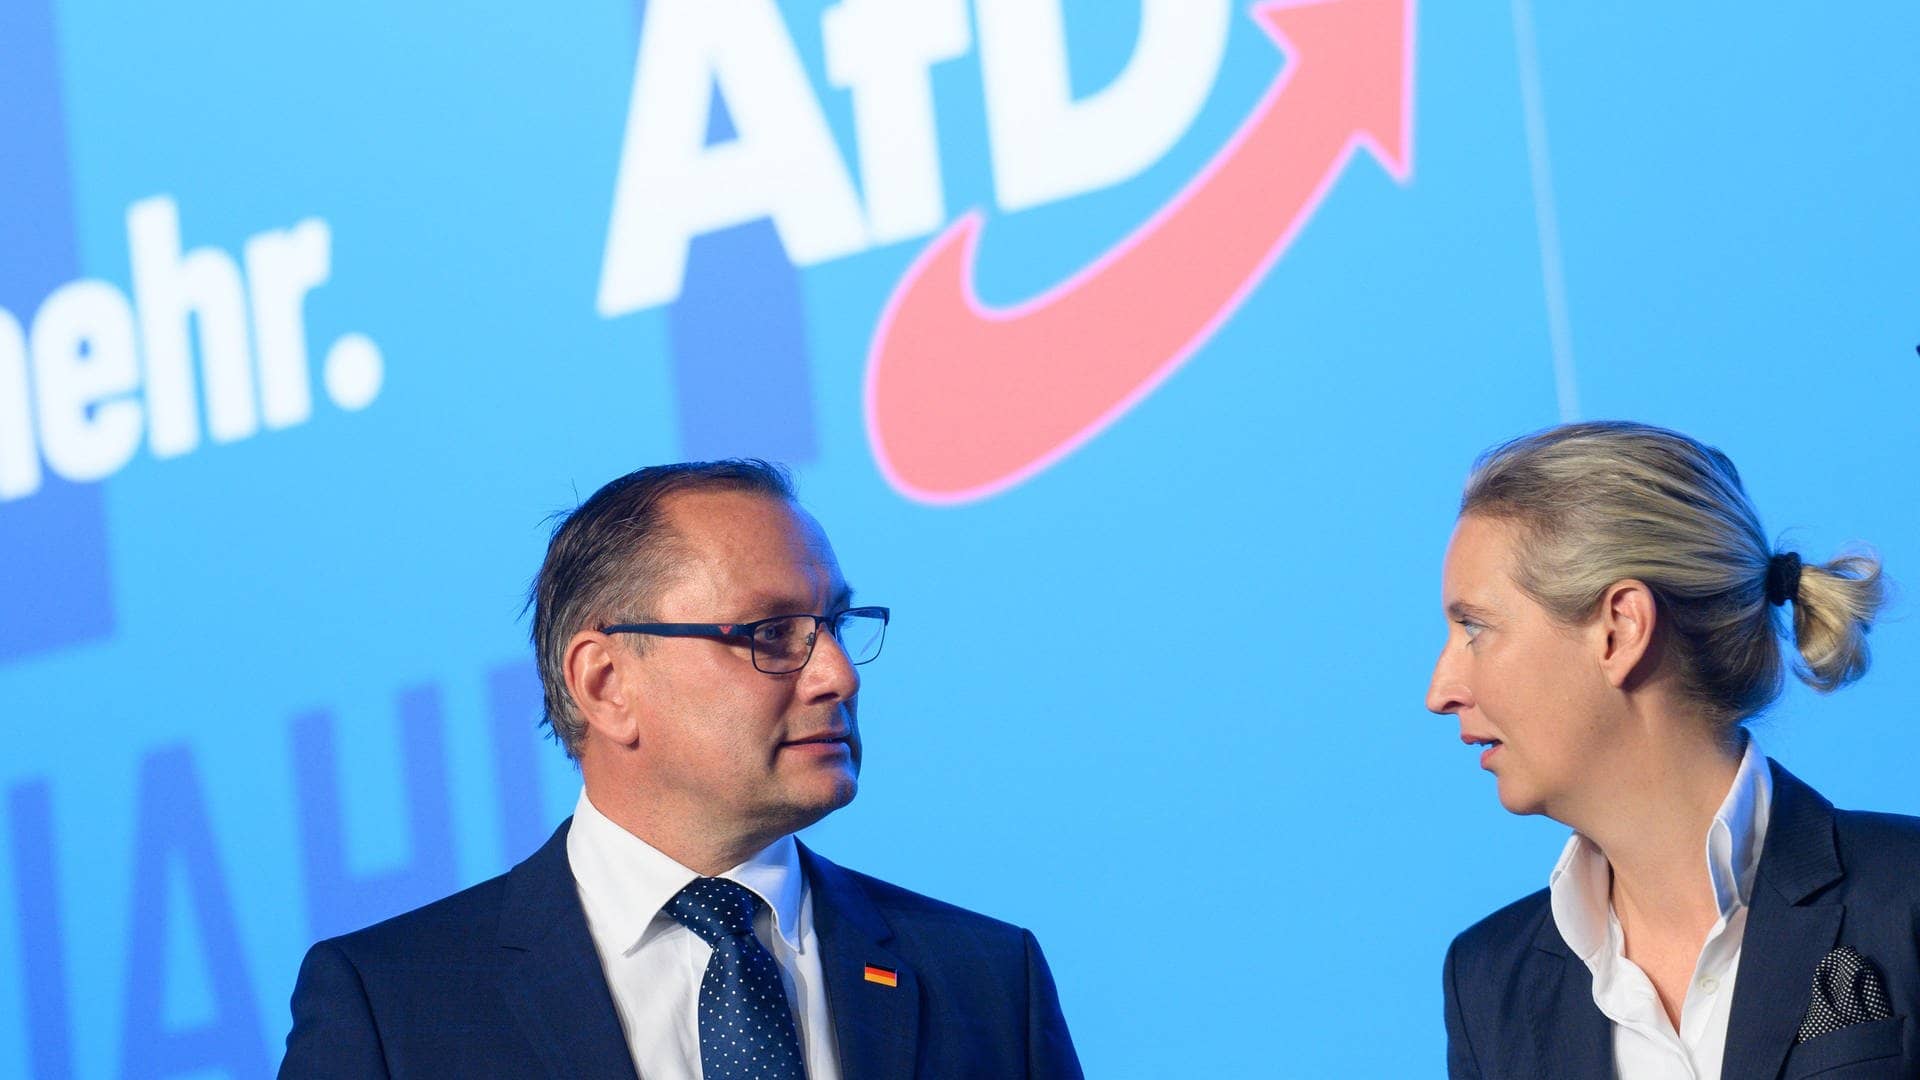 Tino Chrupalla (l.), AfD-Bundesvorsitzender und Vorsitzender der AfD-Bundestagsfraktion, und Alice Weidel, AfD-Bundesvorsitzende und Fraktionsvorsitzende der AfD-Bundestragsfraktion, vor einem AfD-Logo